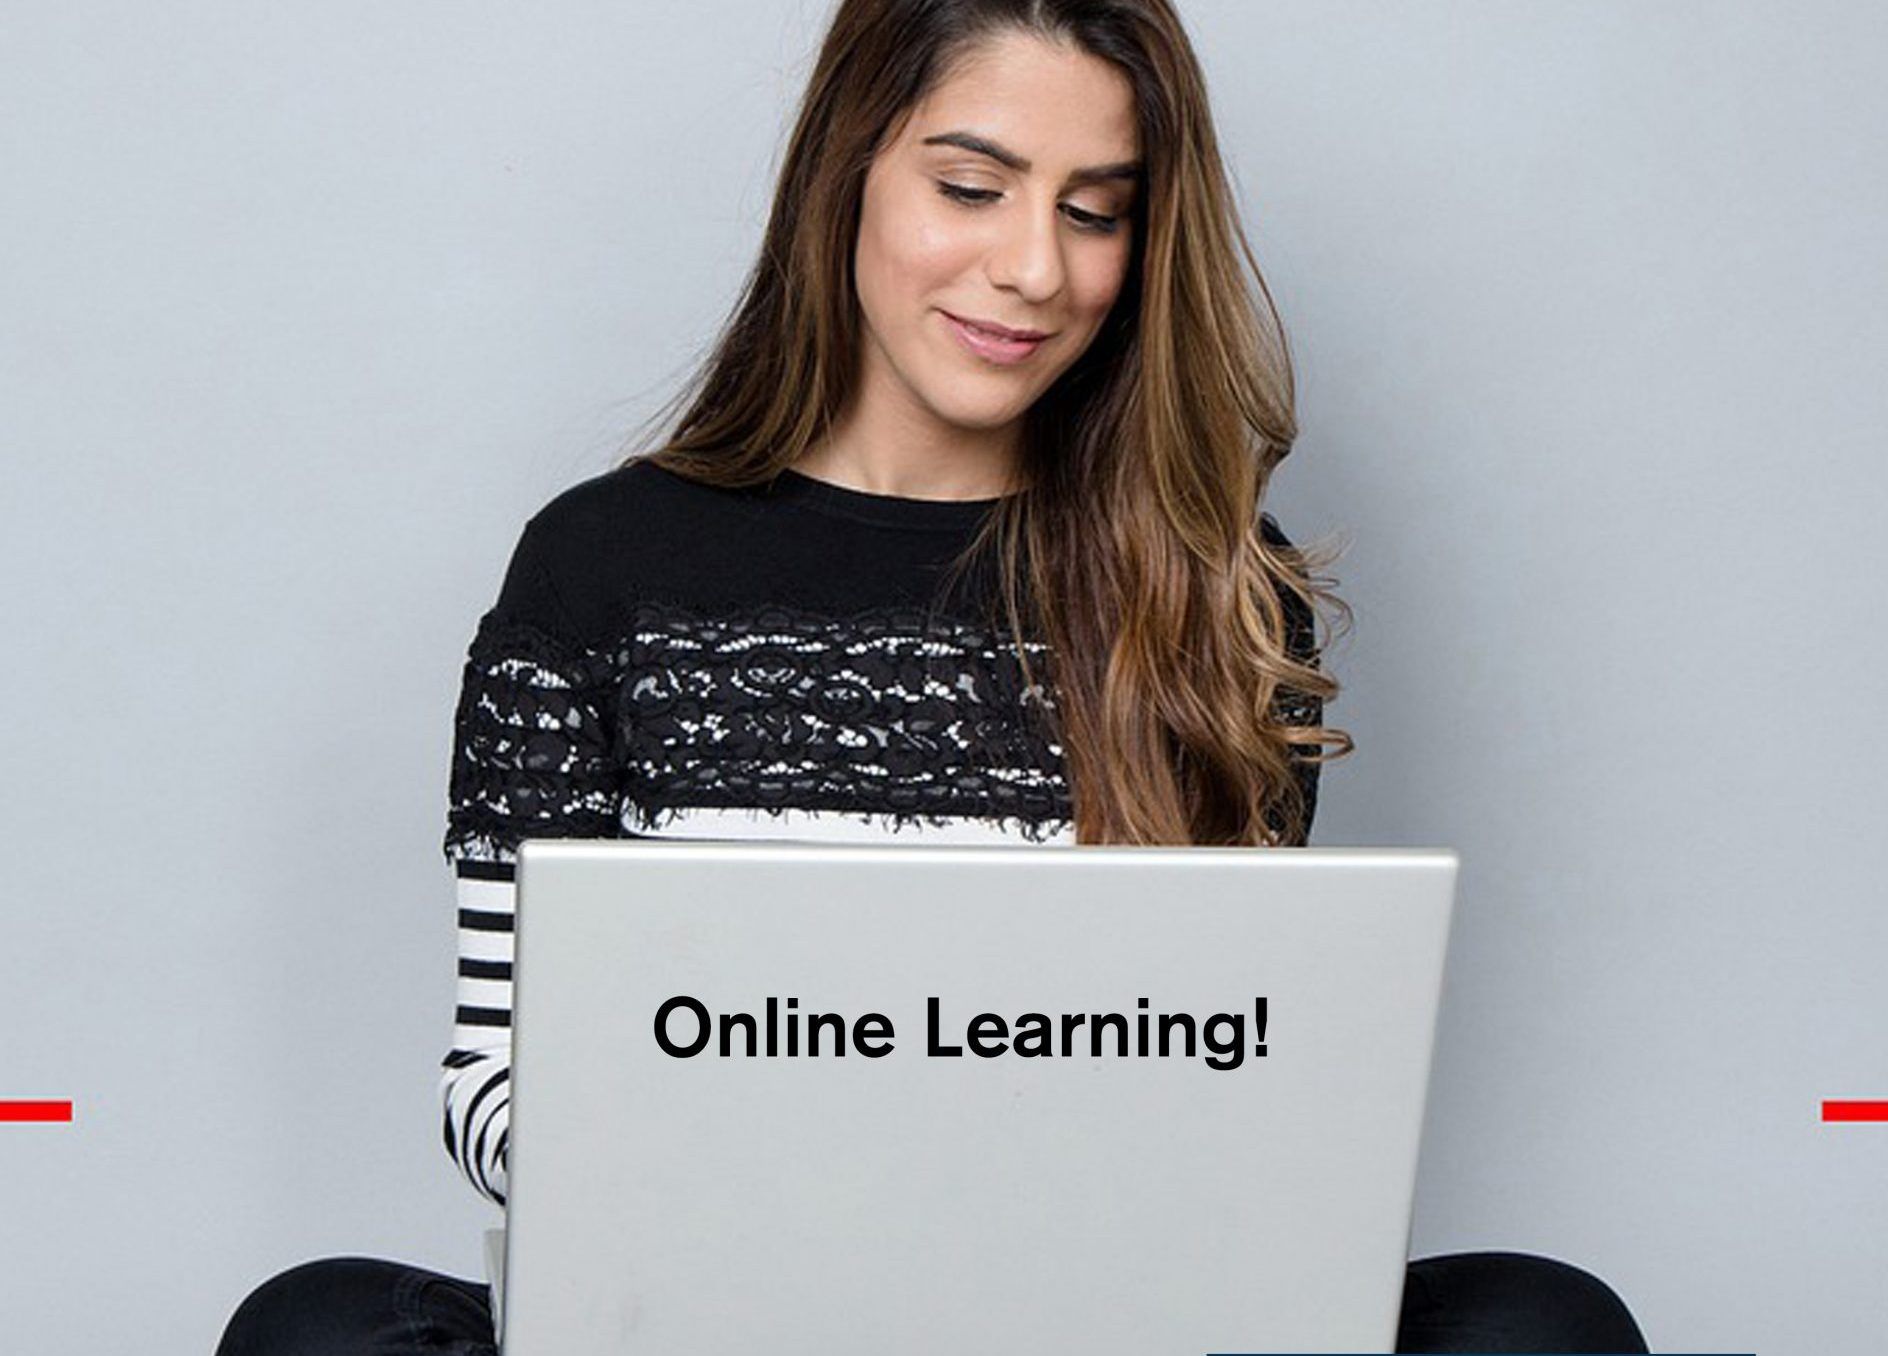 Language schools: When online, always prone